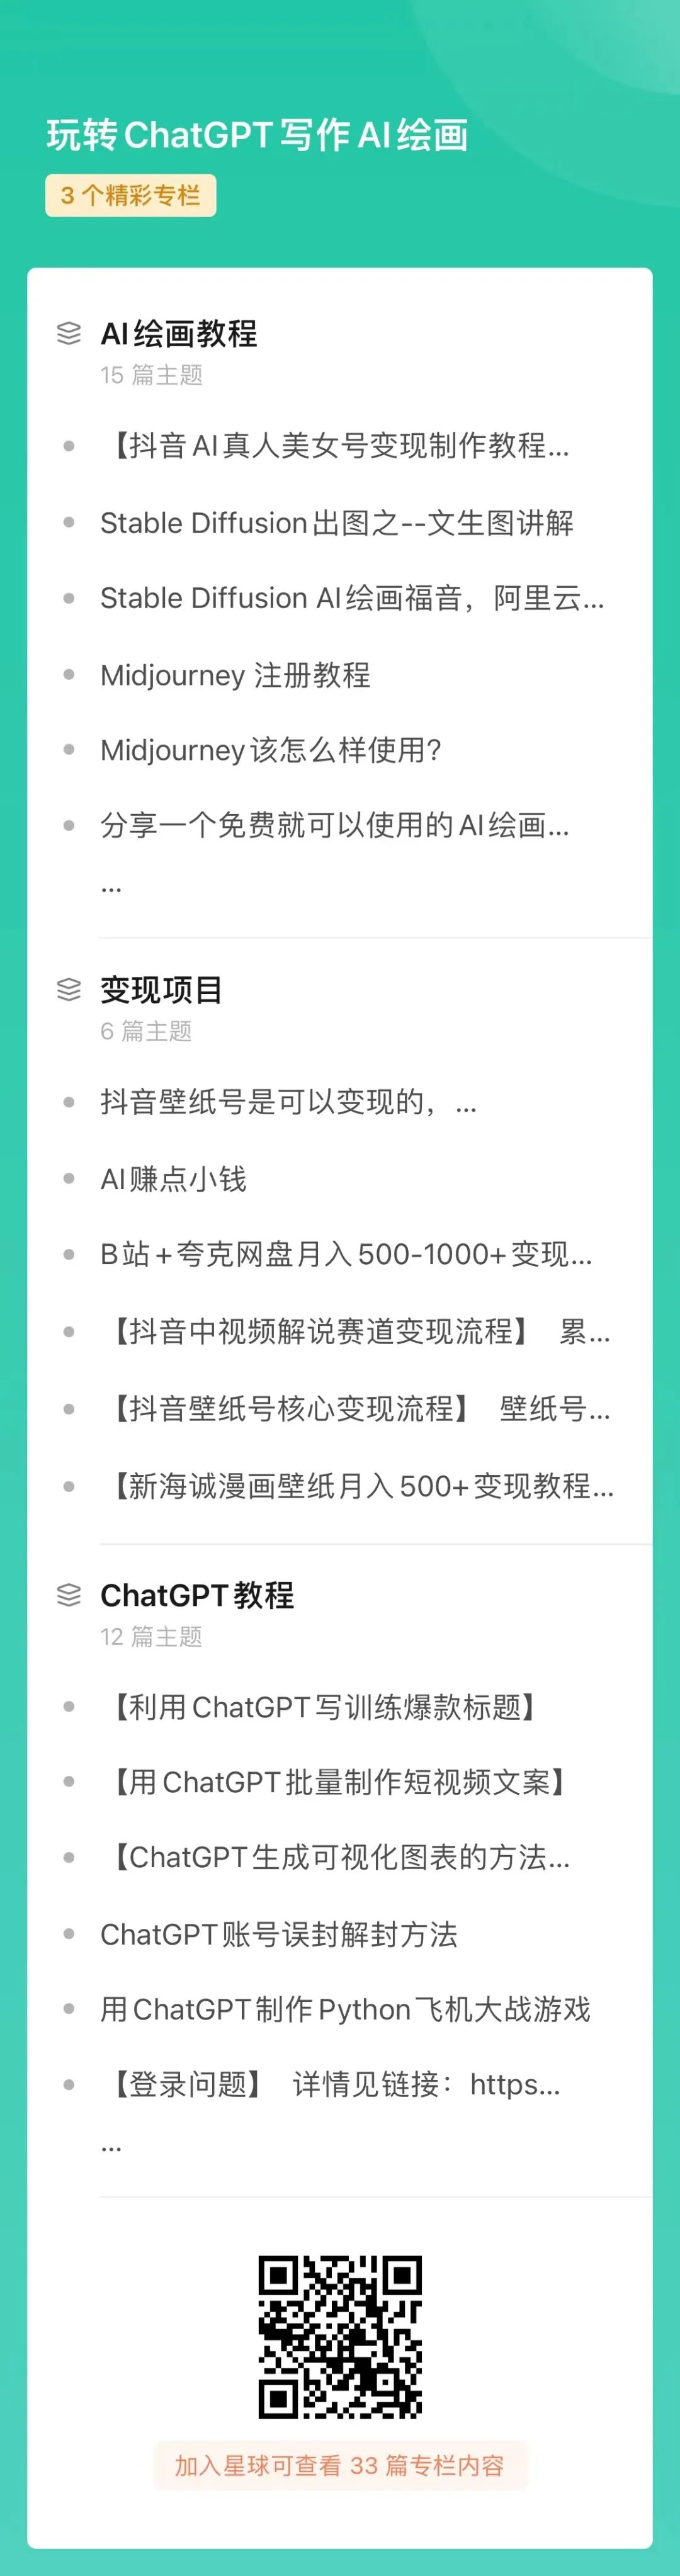 ChatGPT生成精美Echarts图表